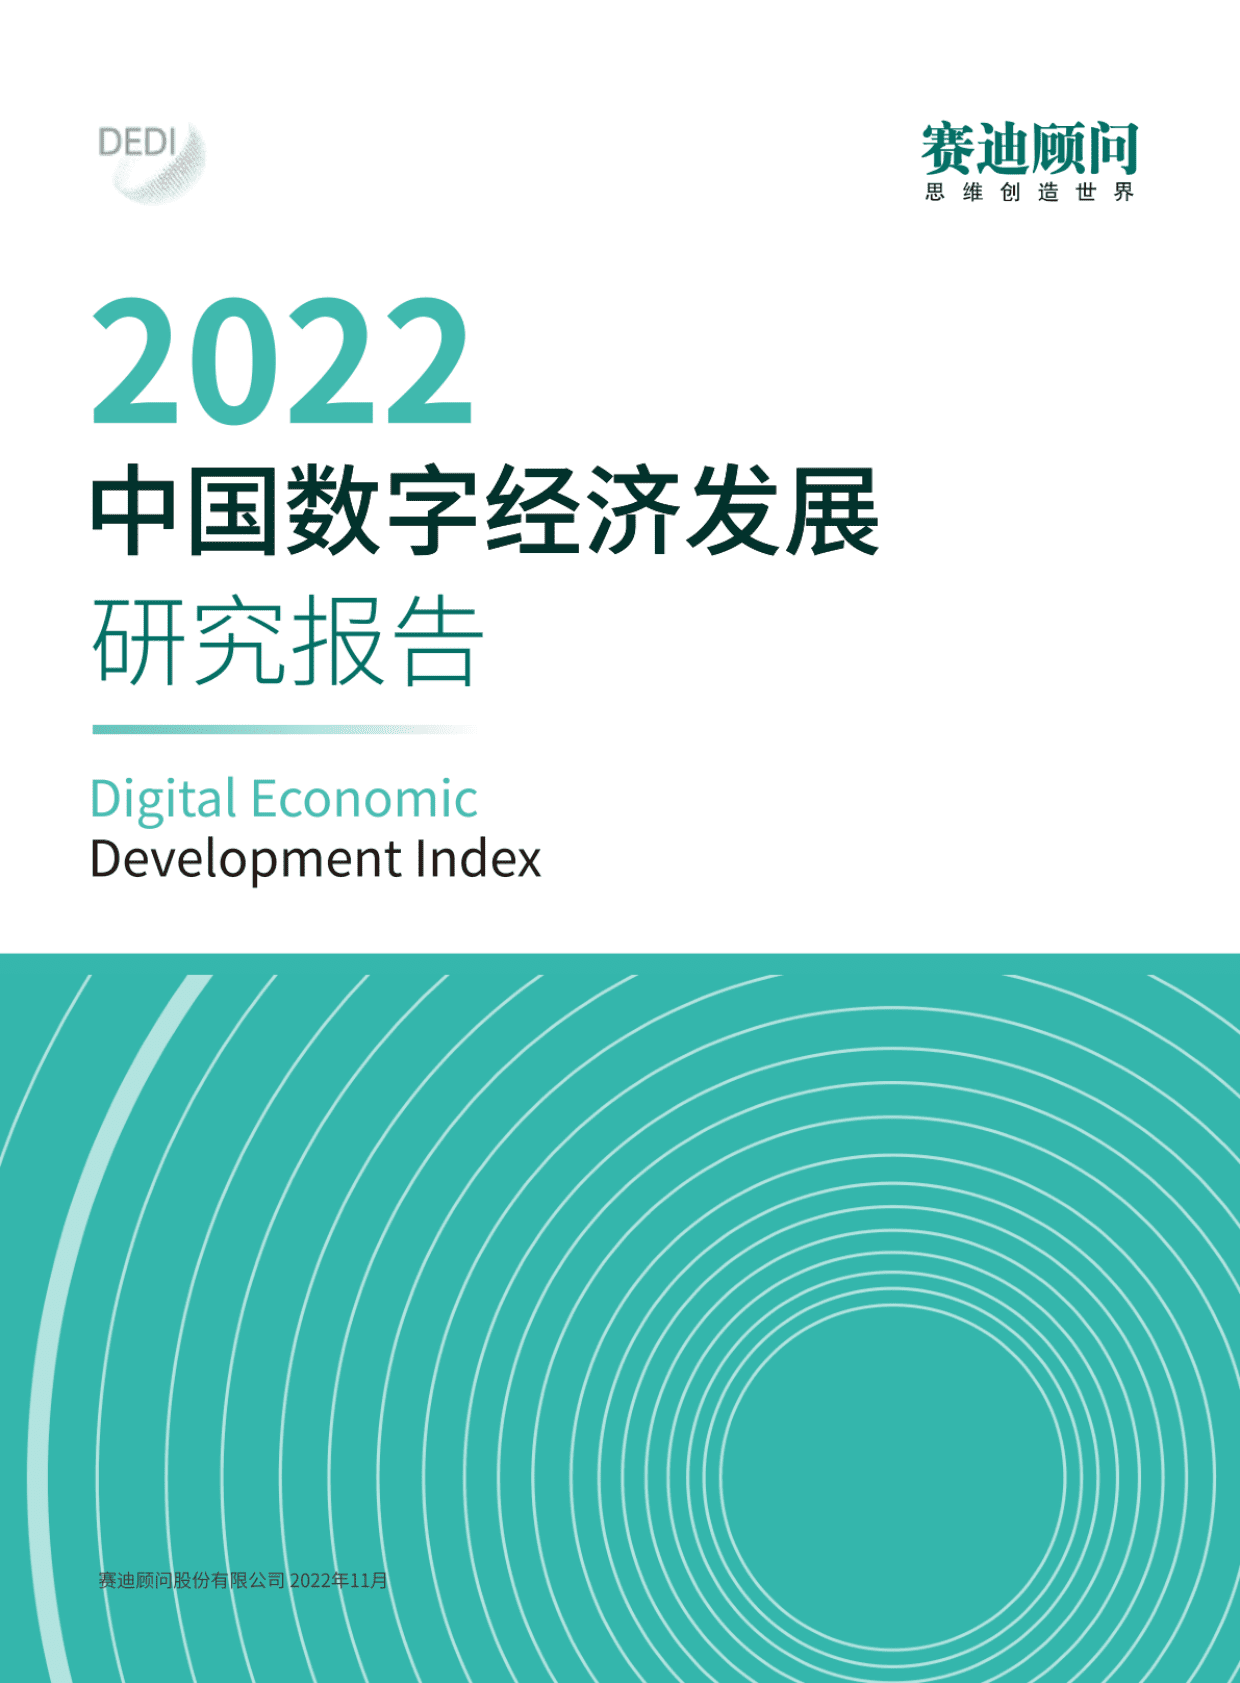 中国信通院：2021年中国数字经济规模达7.1万亿美元-贵阳网